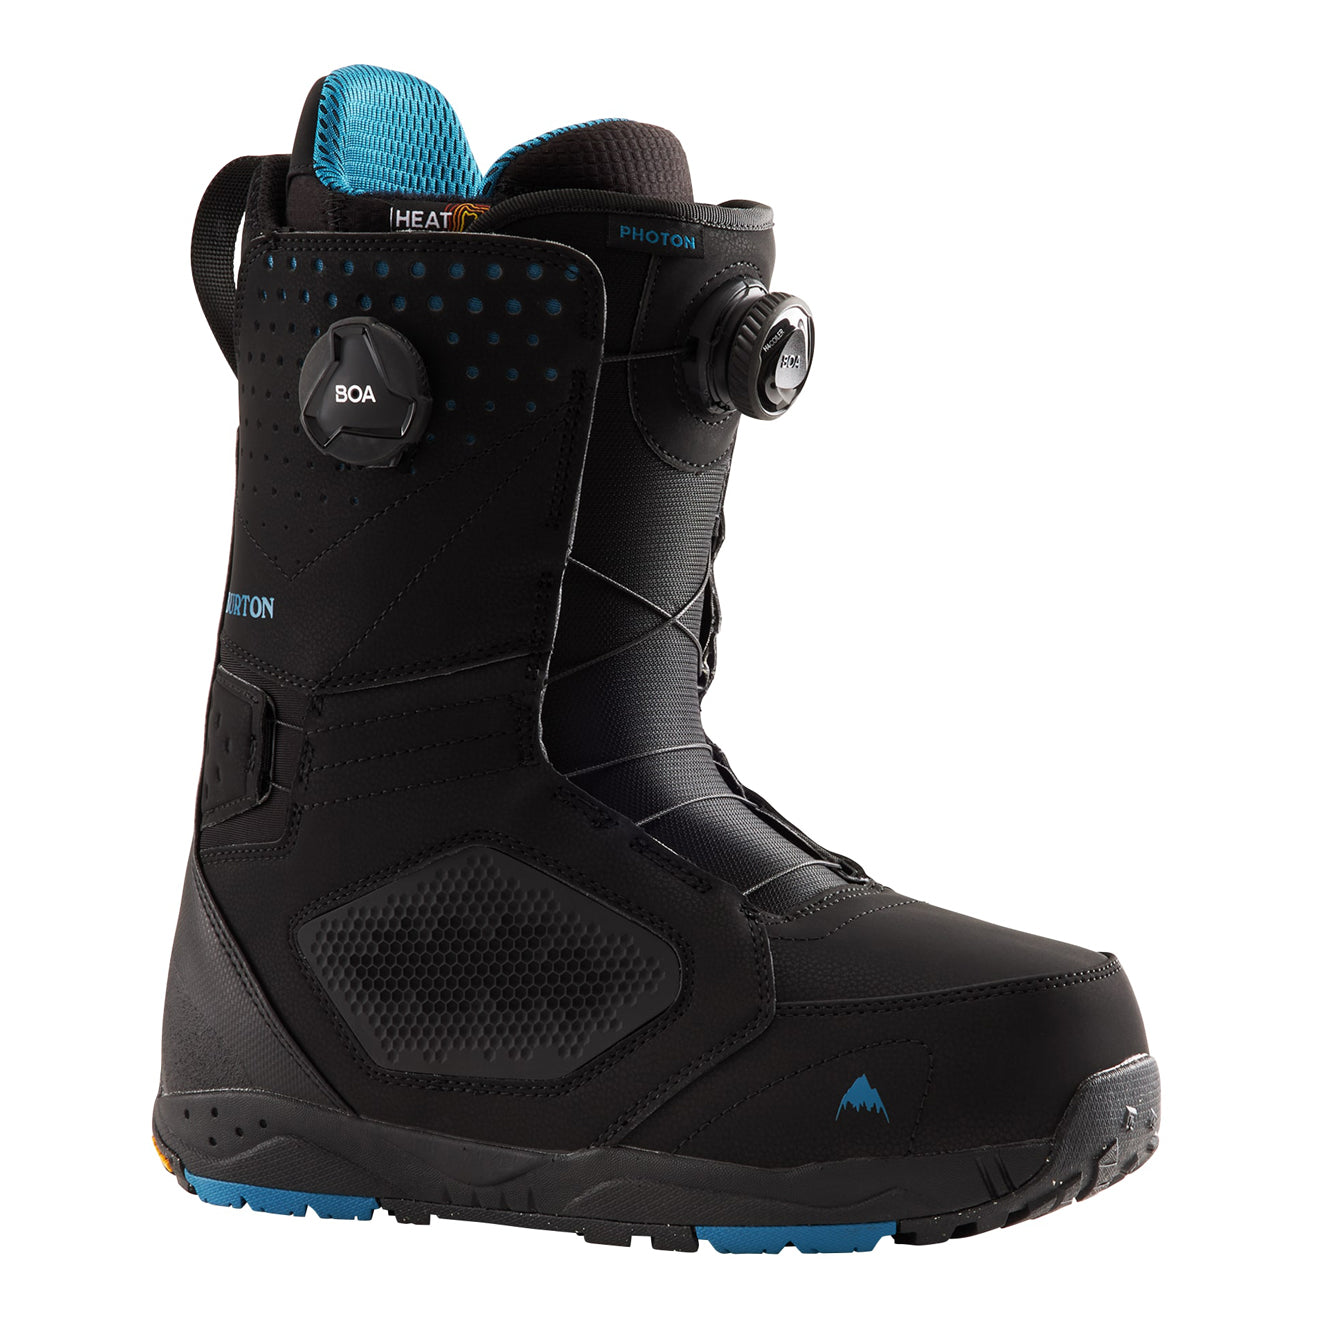 Men's Photon BOA® Snowboard Boots - Wide, Black